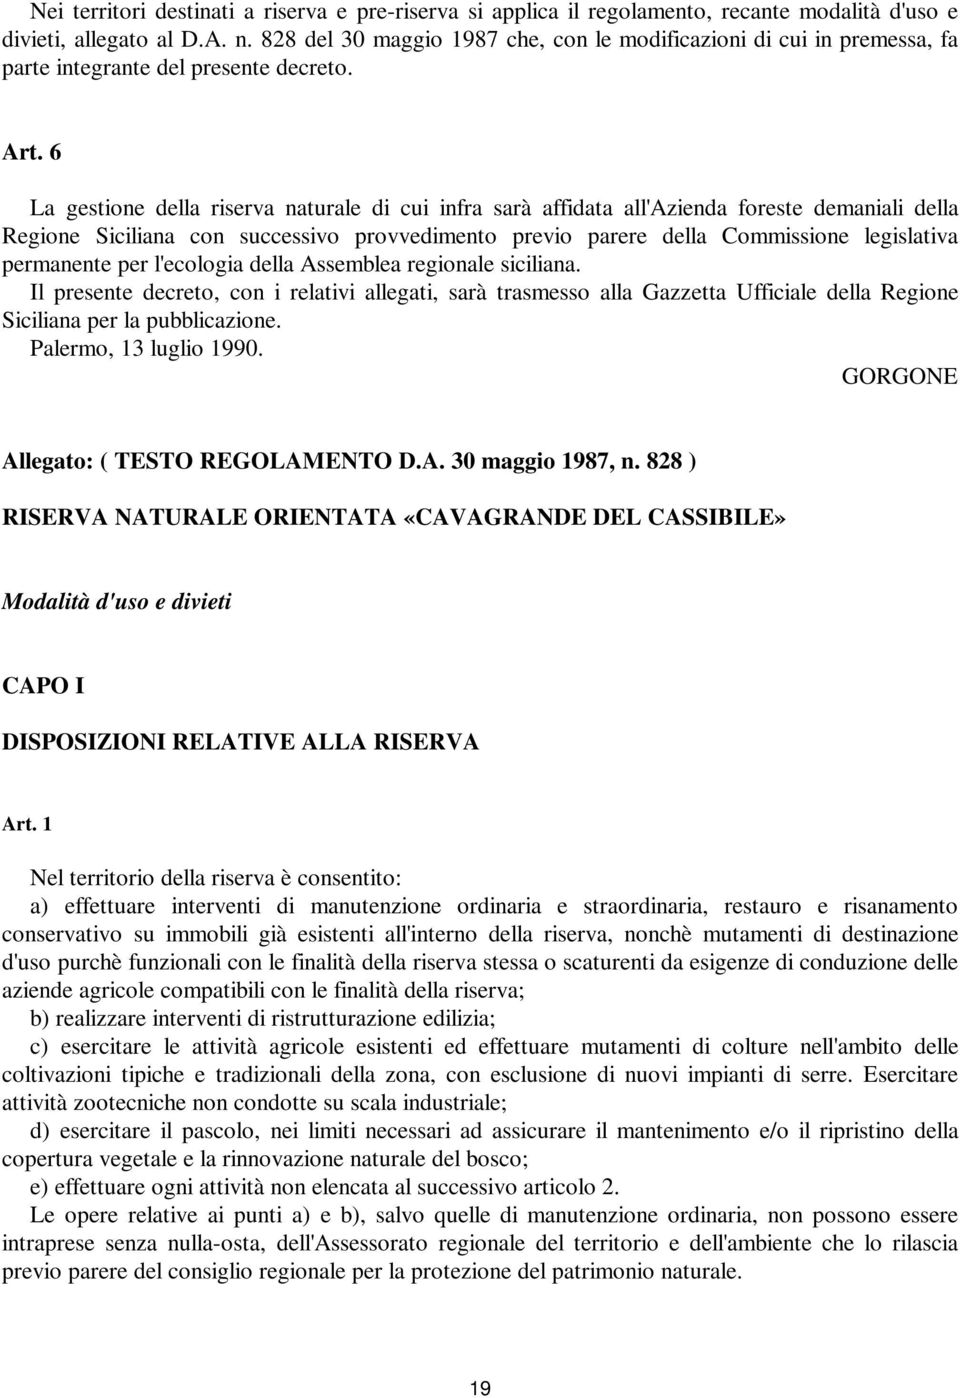 6 La gestione della riserva naturale di cui infra sarà affidata all'azienda foreste demaniali della Regione Siciliana con successivo provvedimento previo parere della Commissione legislativa